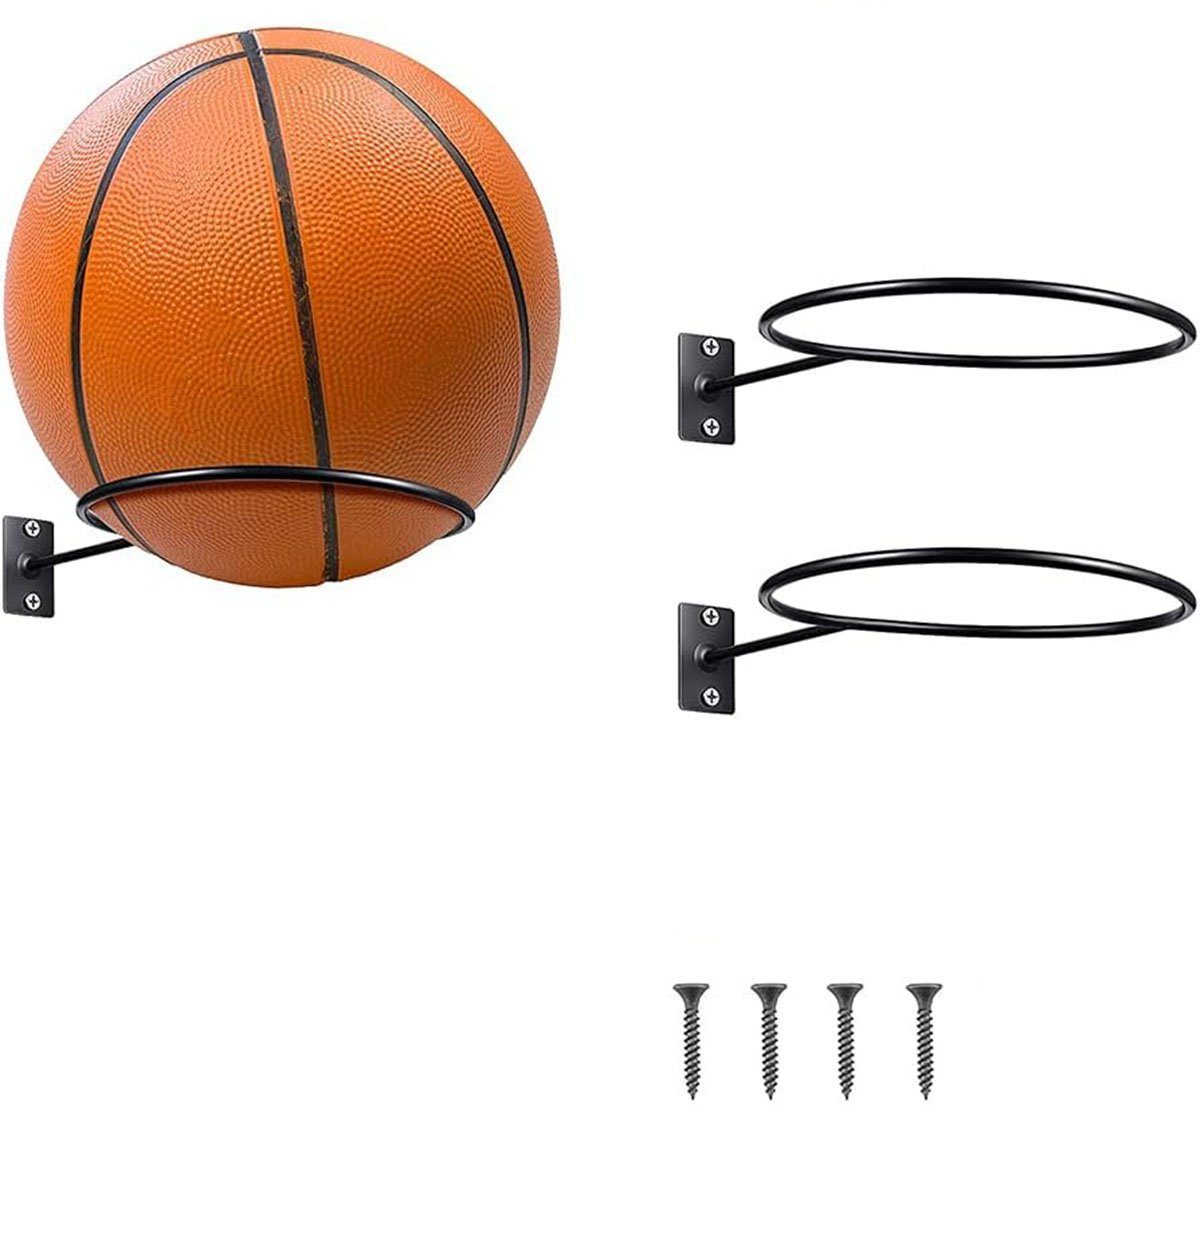 https://i.otto.de/i/otto/7299d818-1ffe-46eb-a5d6-58fed4b30028/ctgtree-basketballstaender-2-stuecke-wandhalterung-ball-rack-montiert-ball-wandhalterung-2-st.jpg?$formatz$